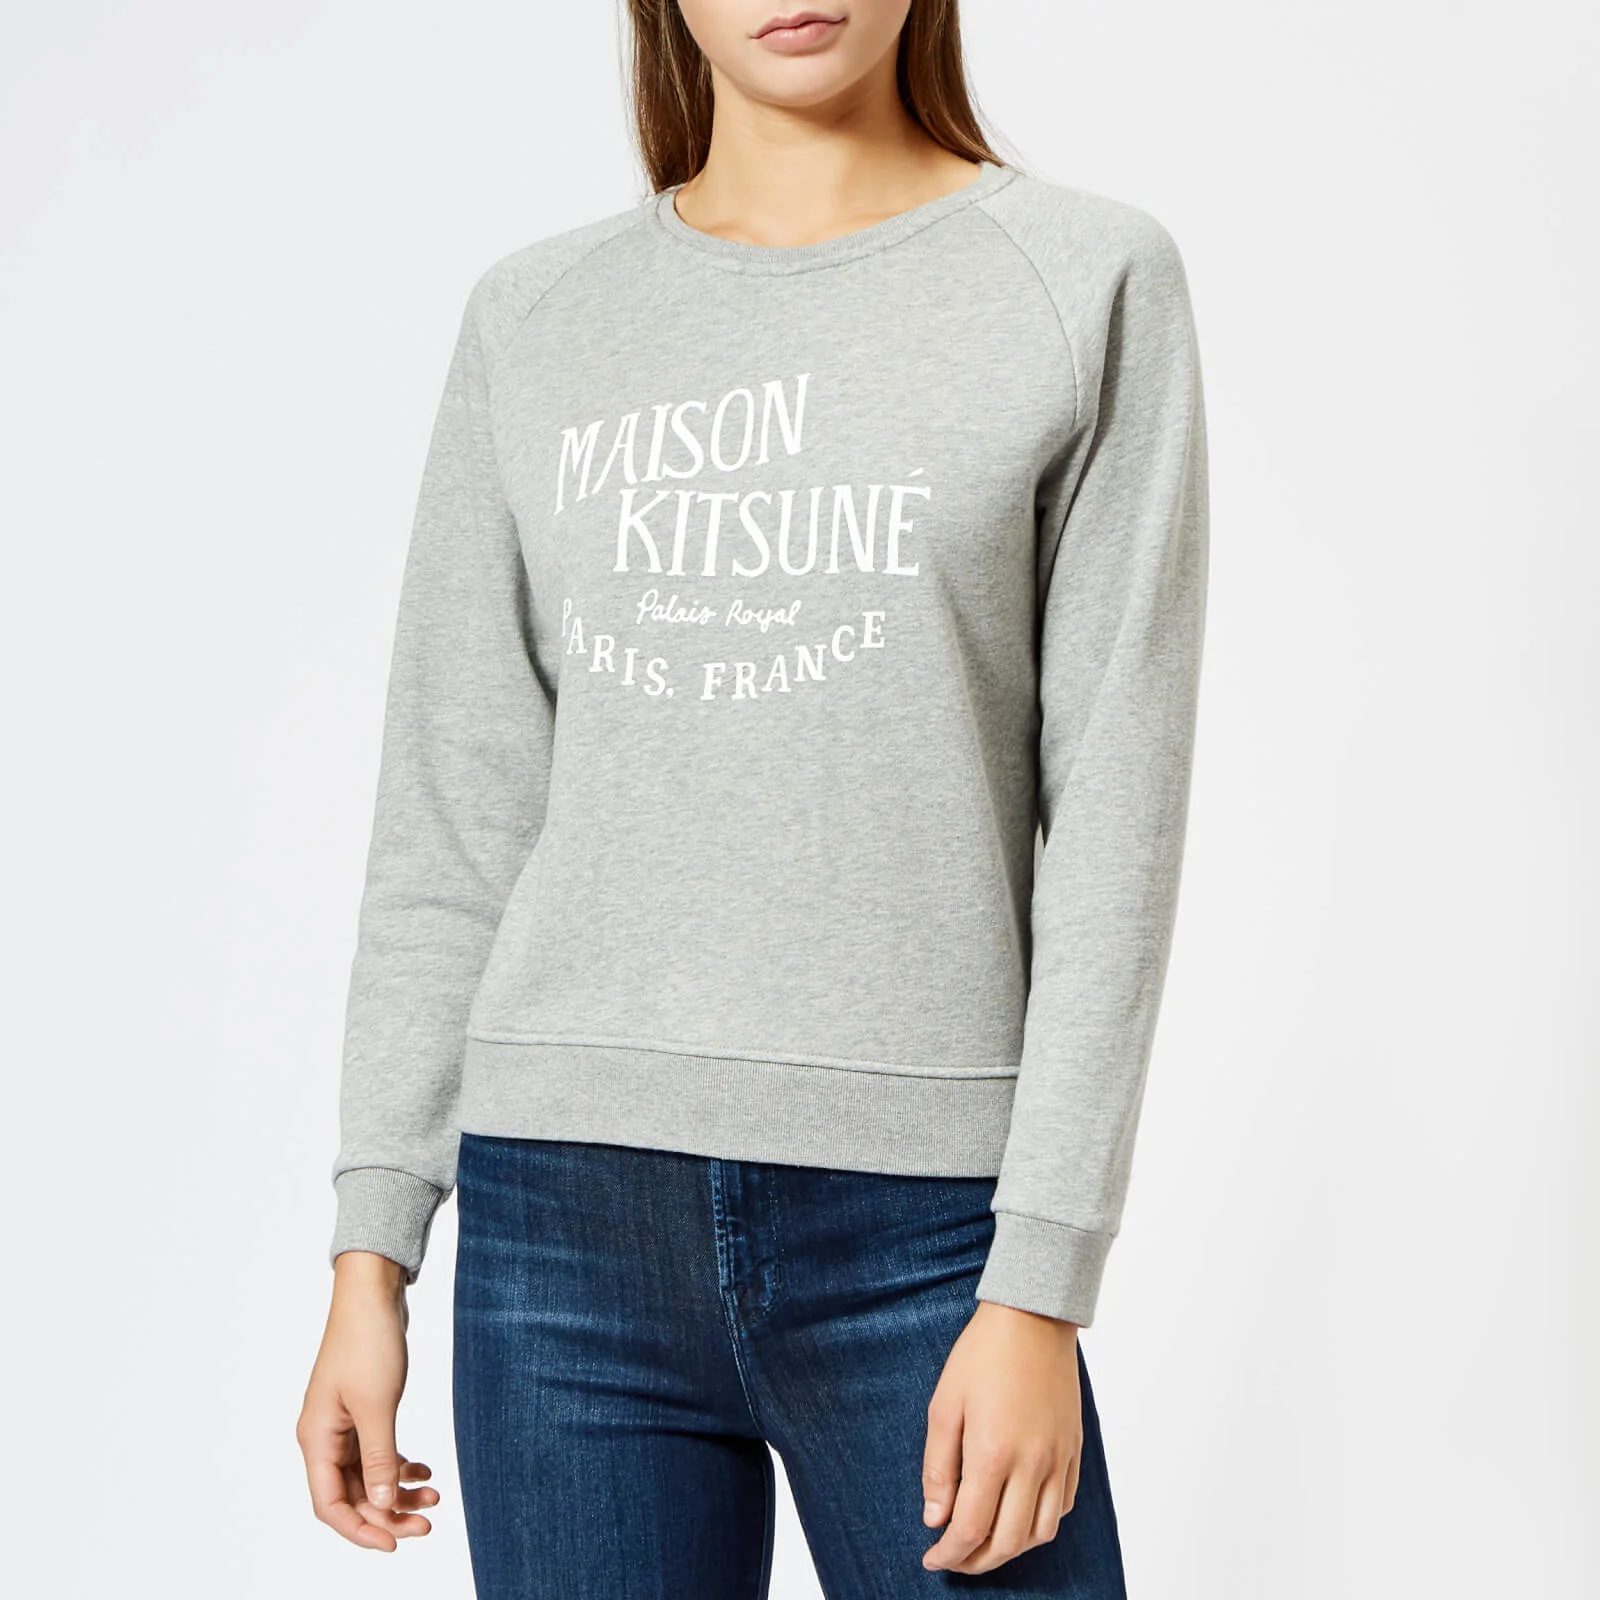 Maison Kitsuné Women's Par Perm Palais Royal Sweatshirt - Grey Melange Image 1